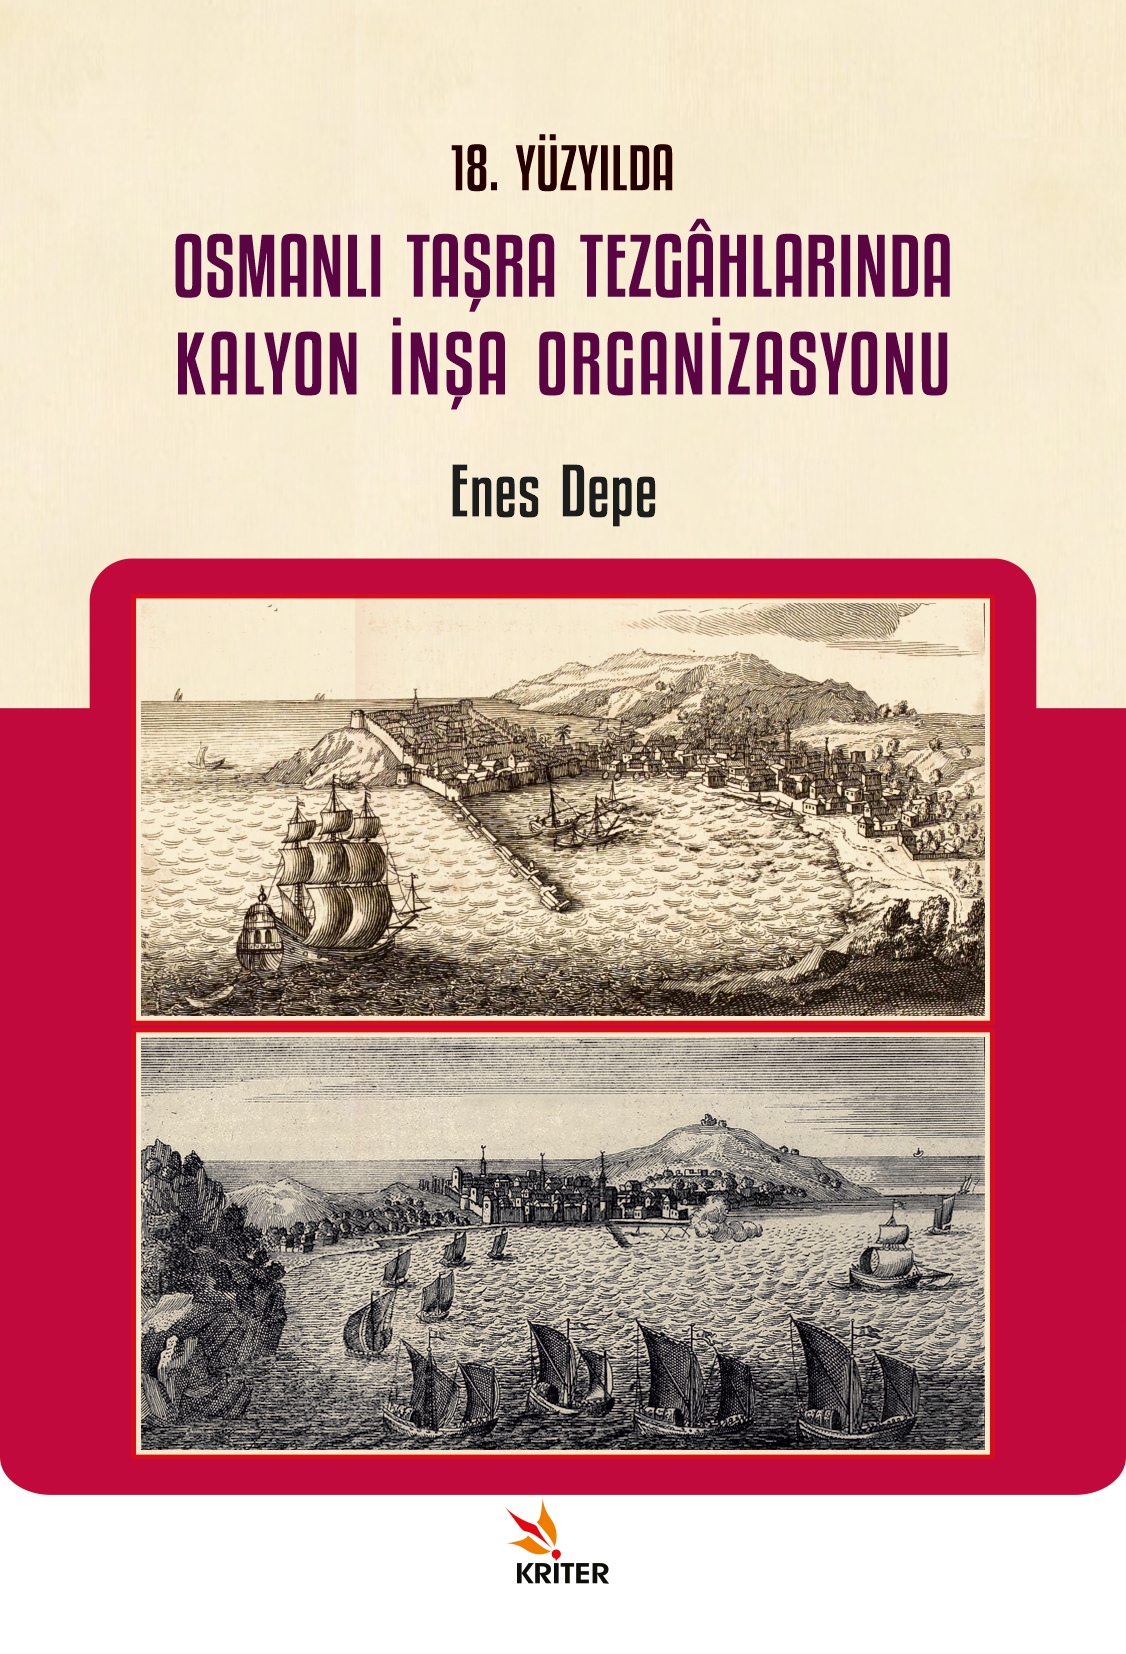 18. Yüzyılda Osmanlı Taşra Tezgâhlarında Kalyon İnşa Organizasyonu